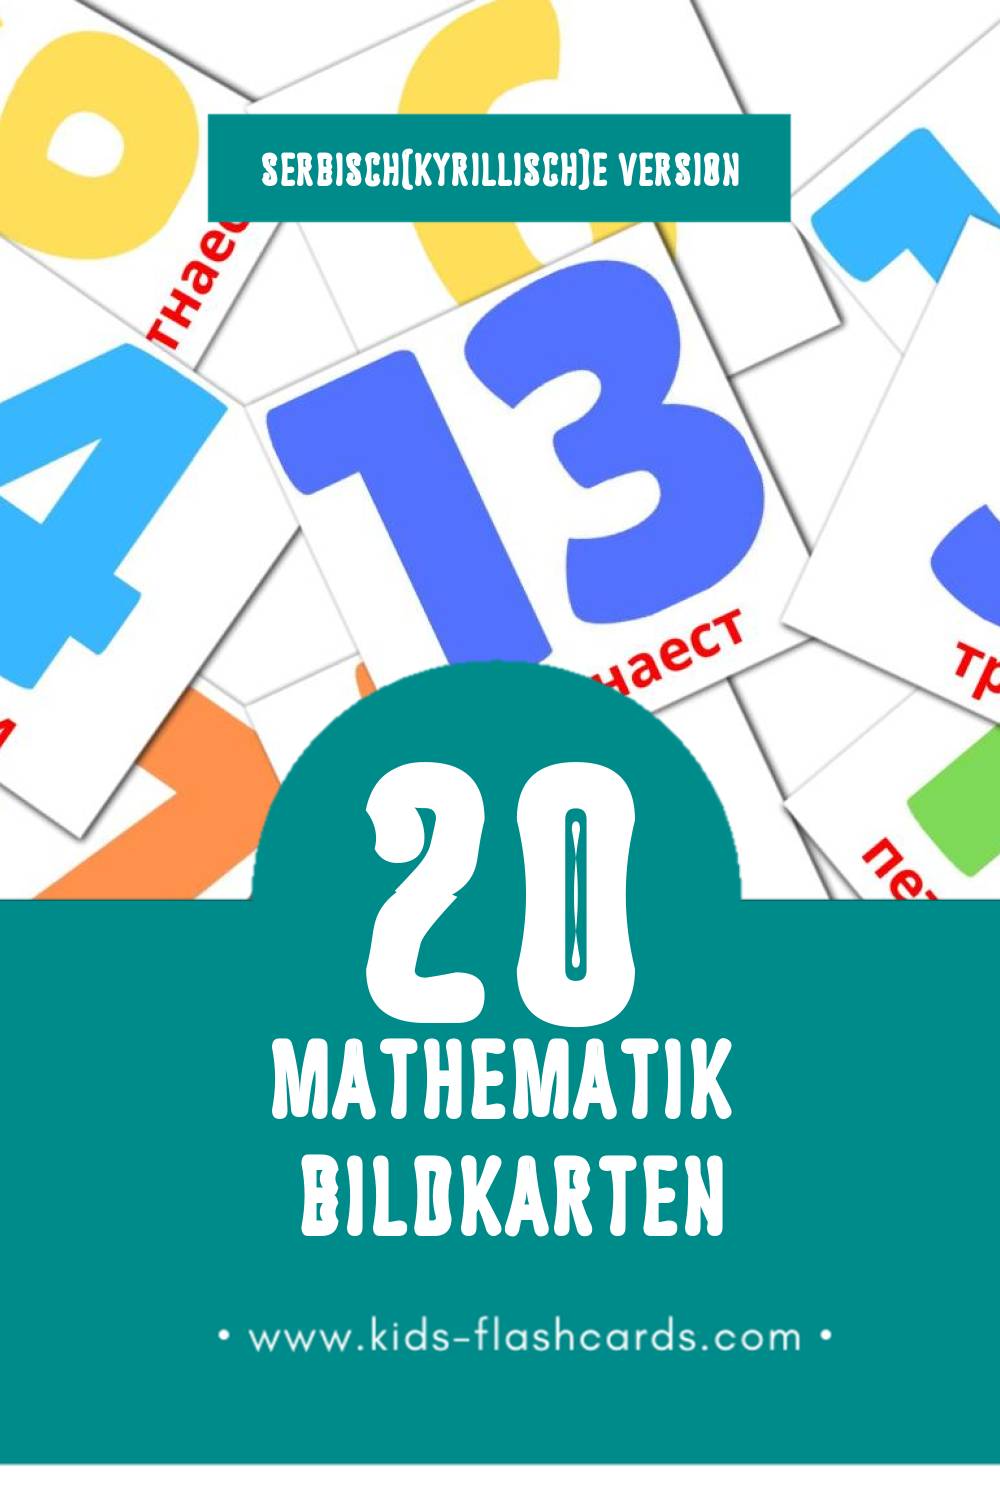 Visual Математика Flashcards für Kleinkinder (20 Karten in Serbisch(kyrillisch))